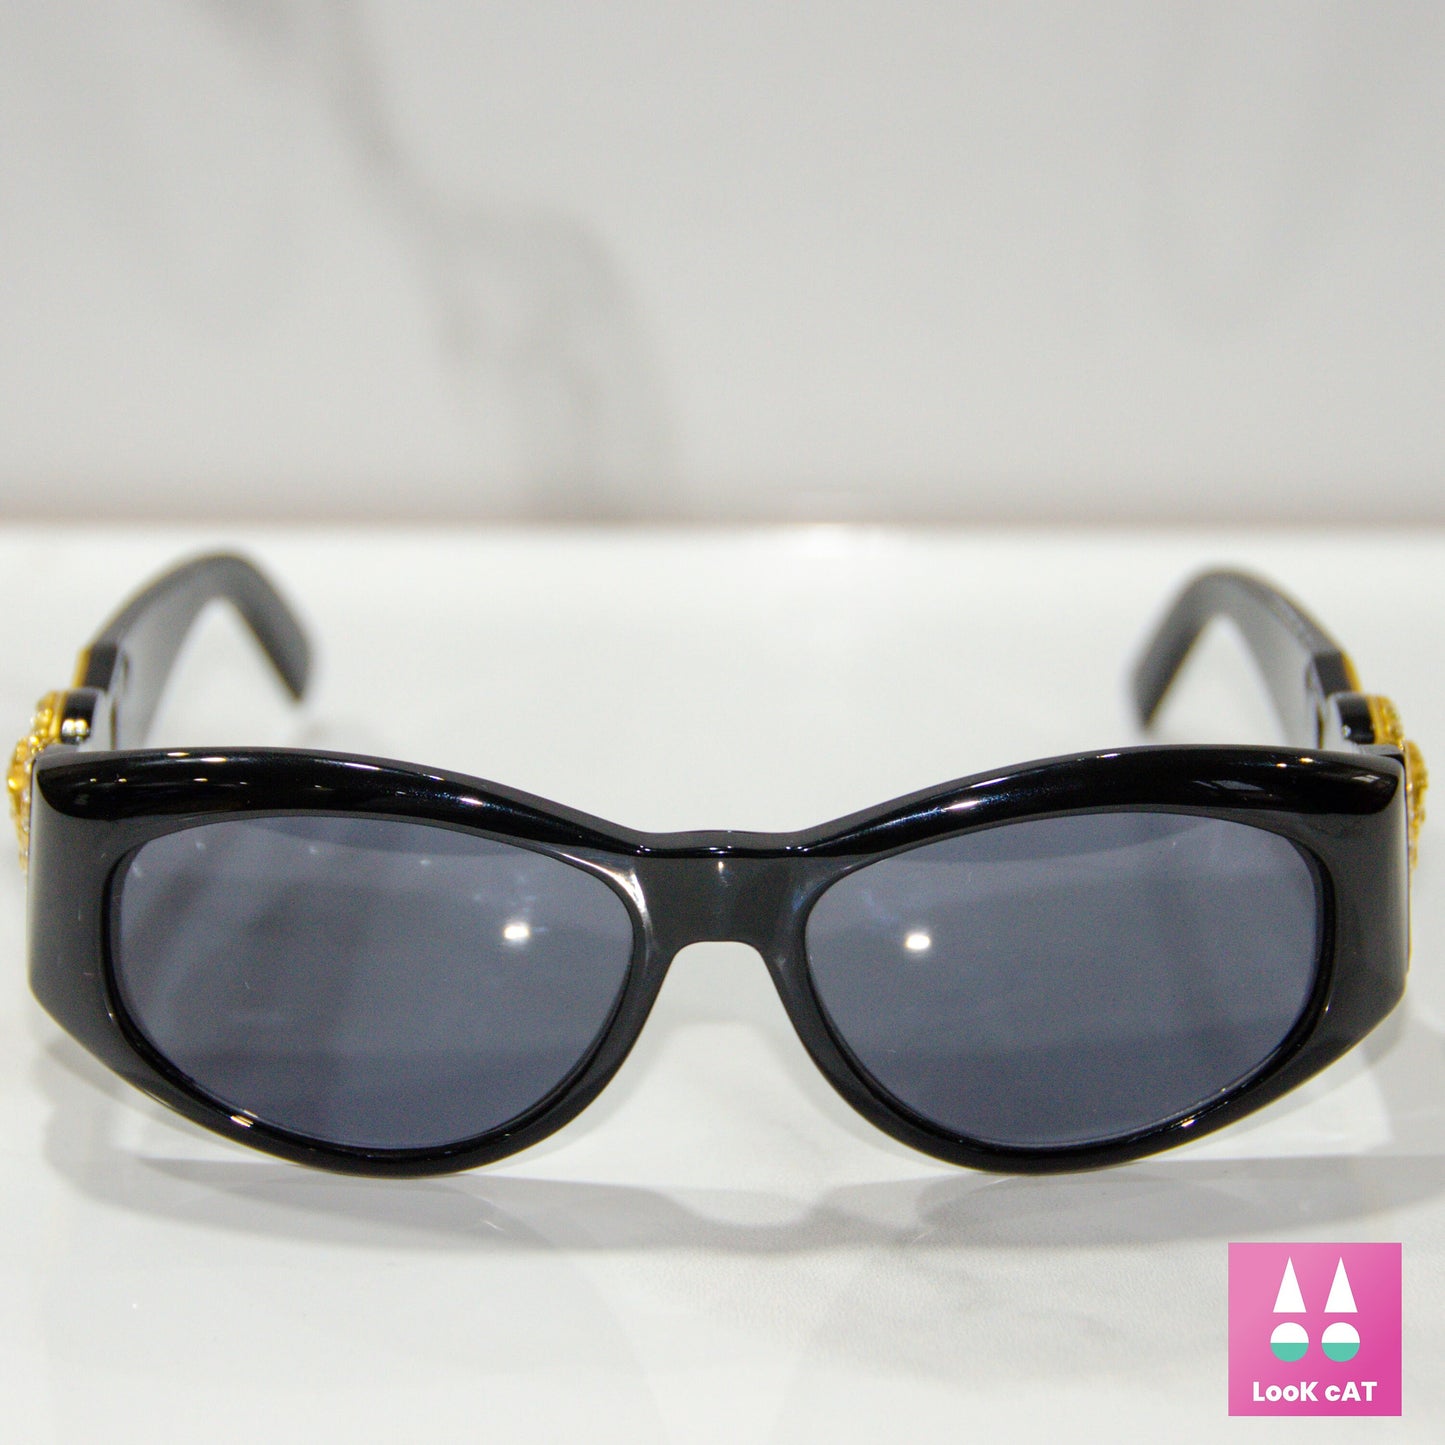 Gianni Versace 太阳镜 mod 424 strass lunette brille 太阳镜 gafas